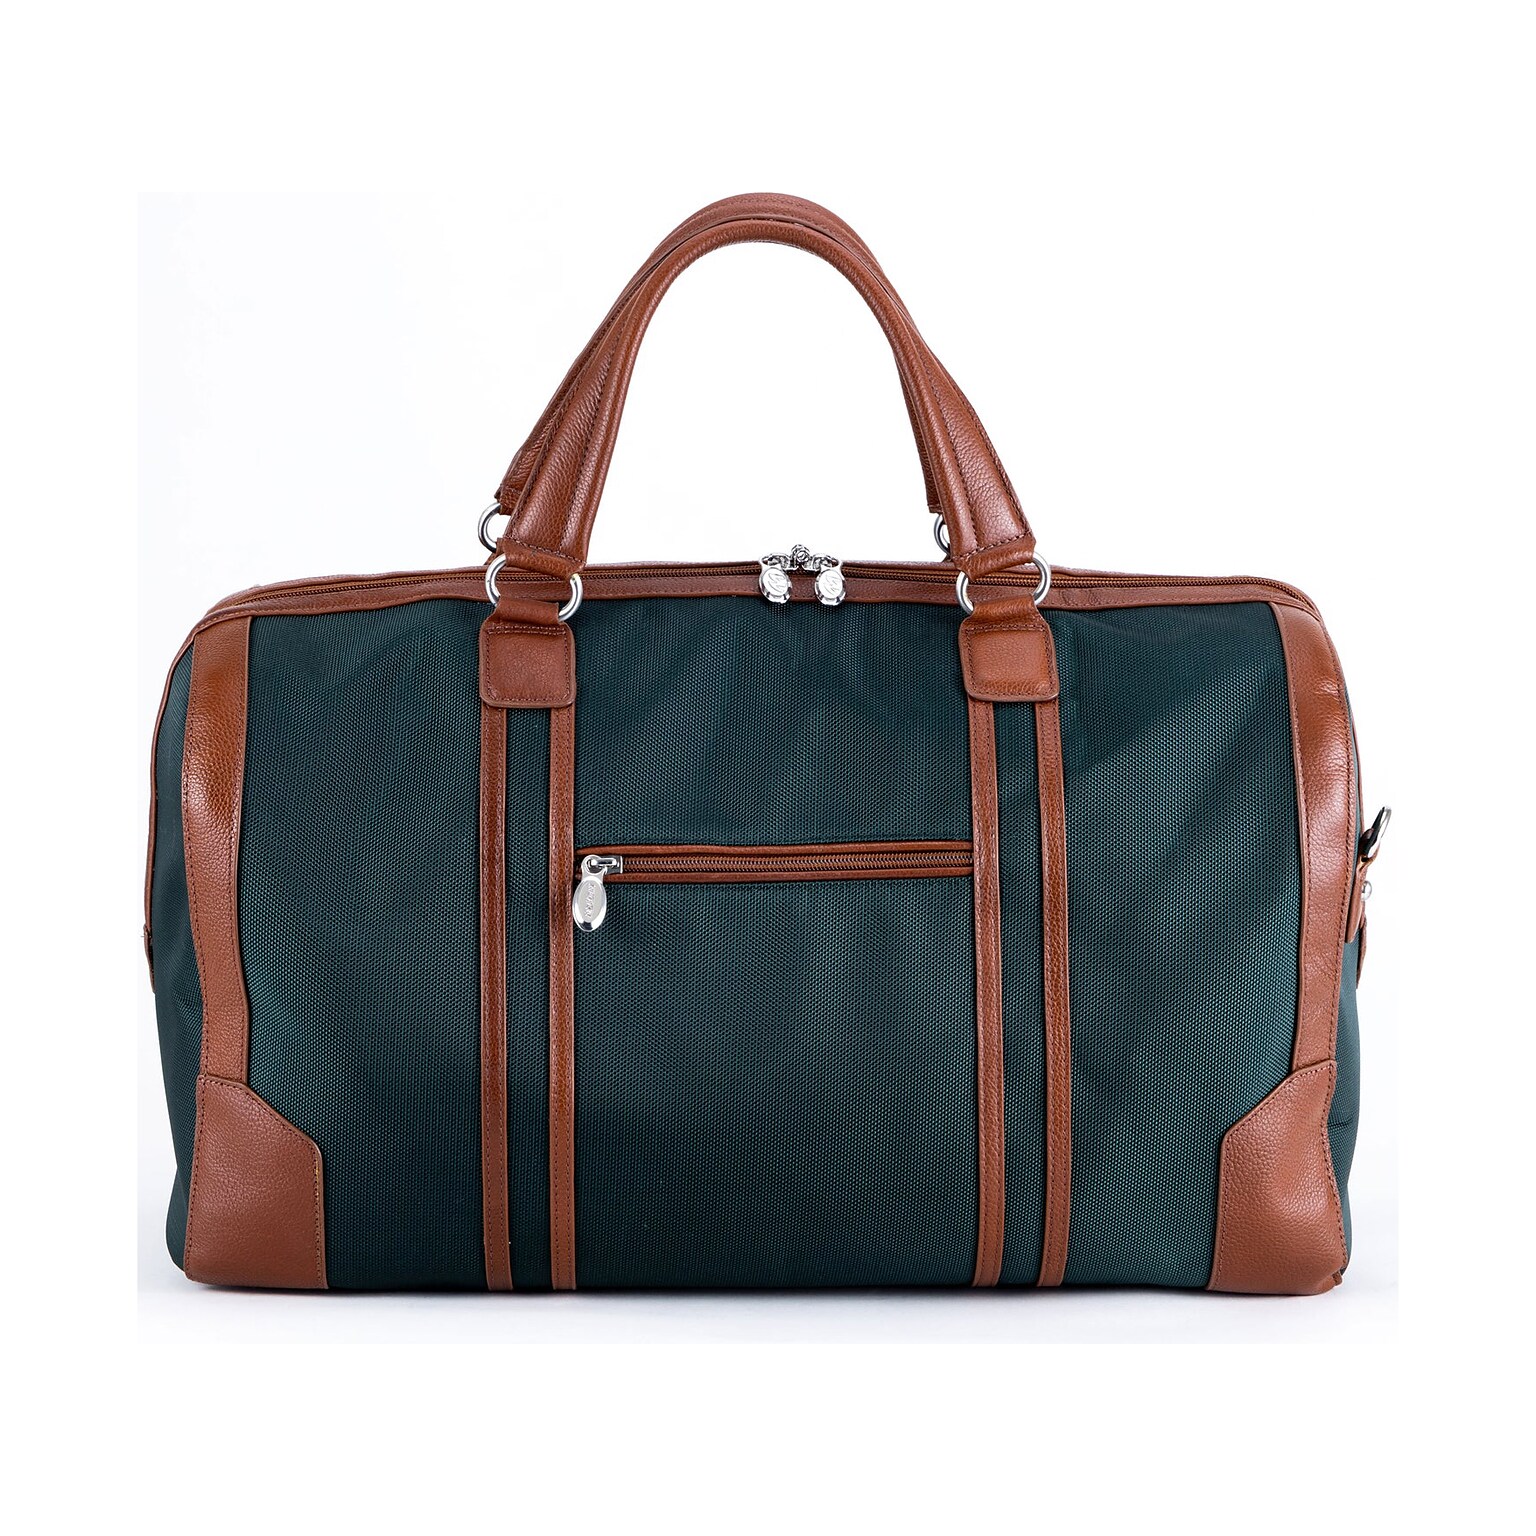 McKlein USA Kinzie Green Carry-All Duffel Bag (78191)